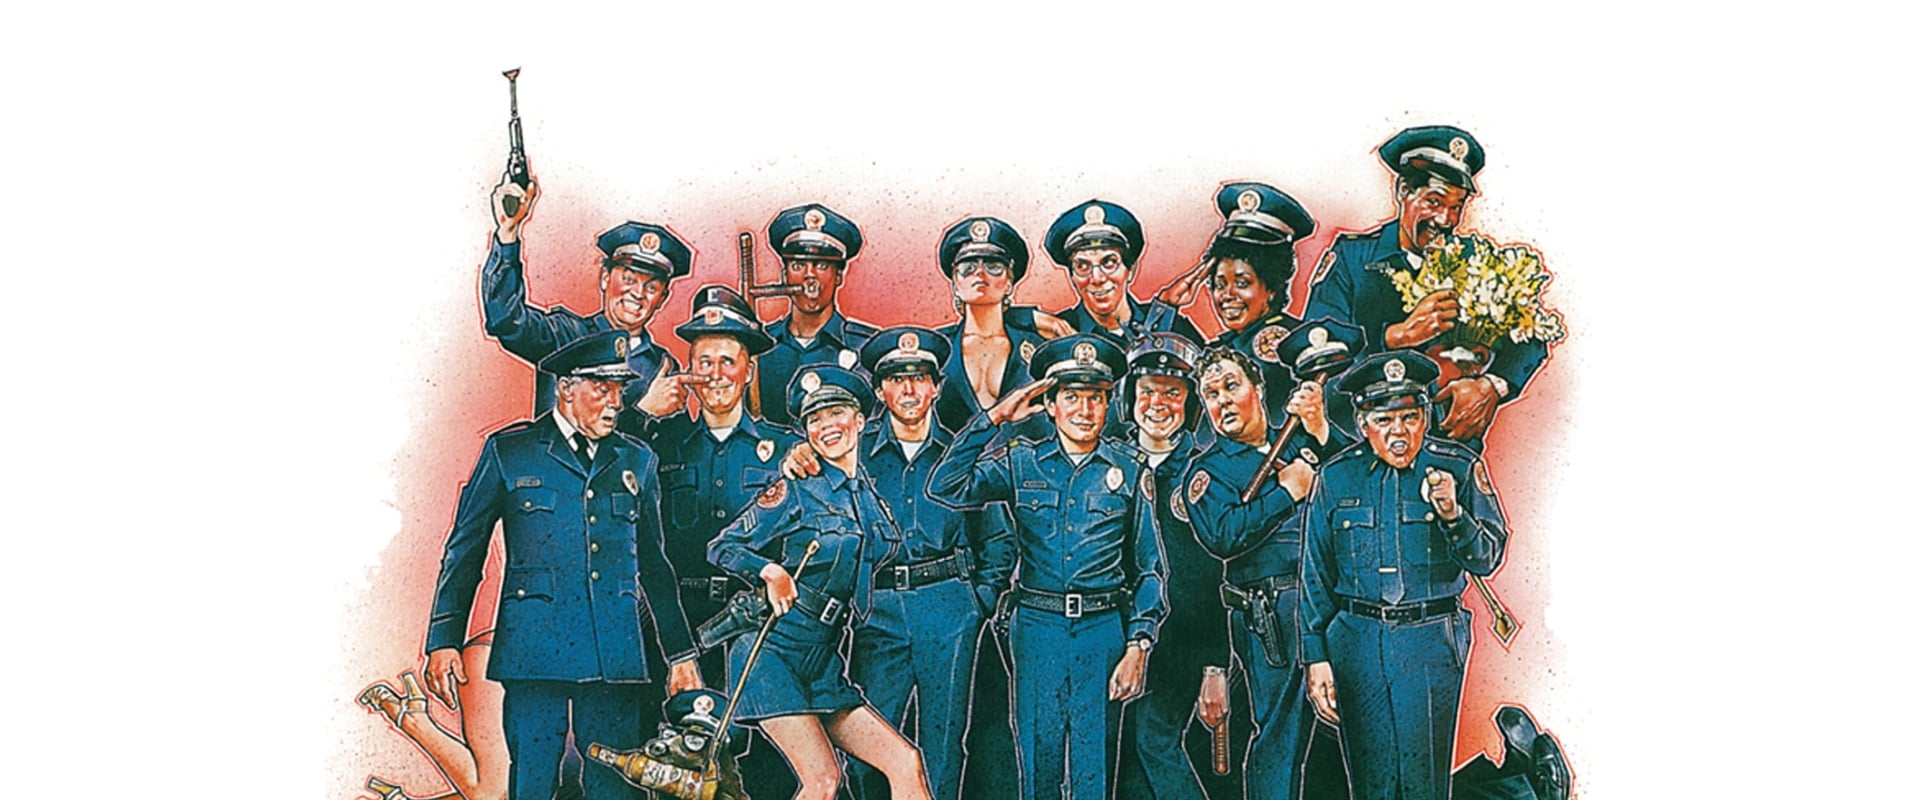 Academia de Polícia